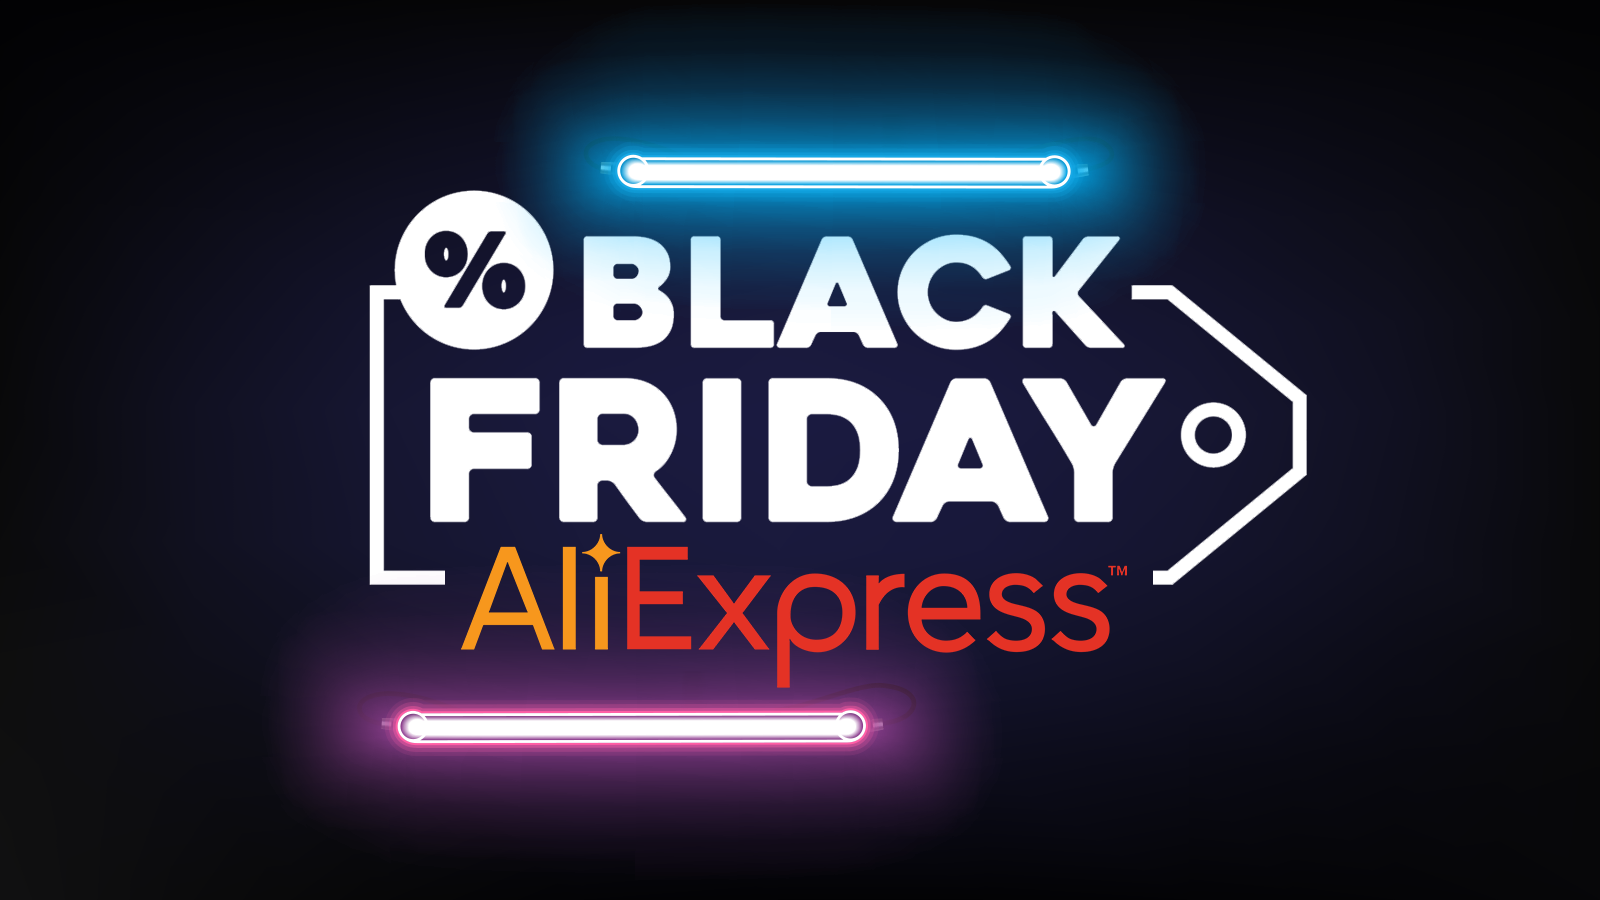 Black Friday AliExpress : 5 promos chocs sur les smarphones à saisir - Clubic